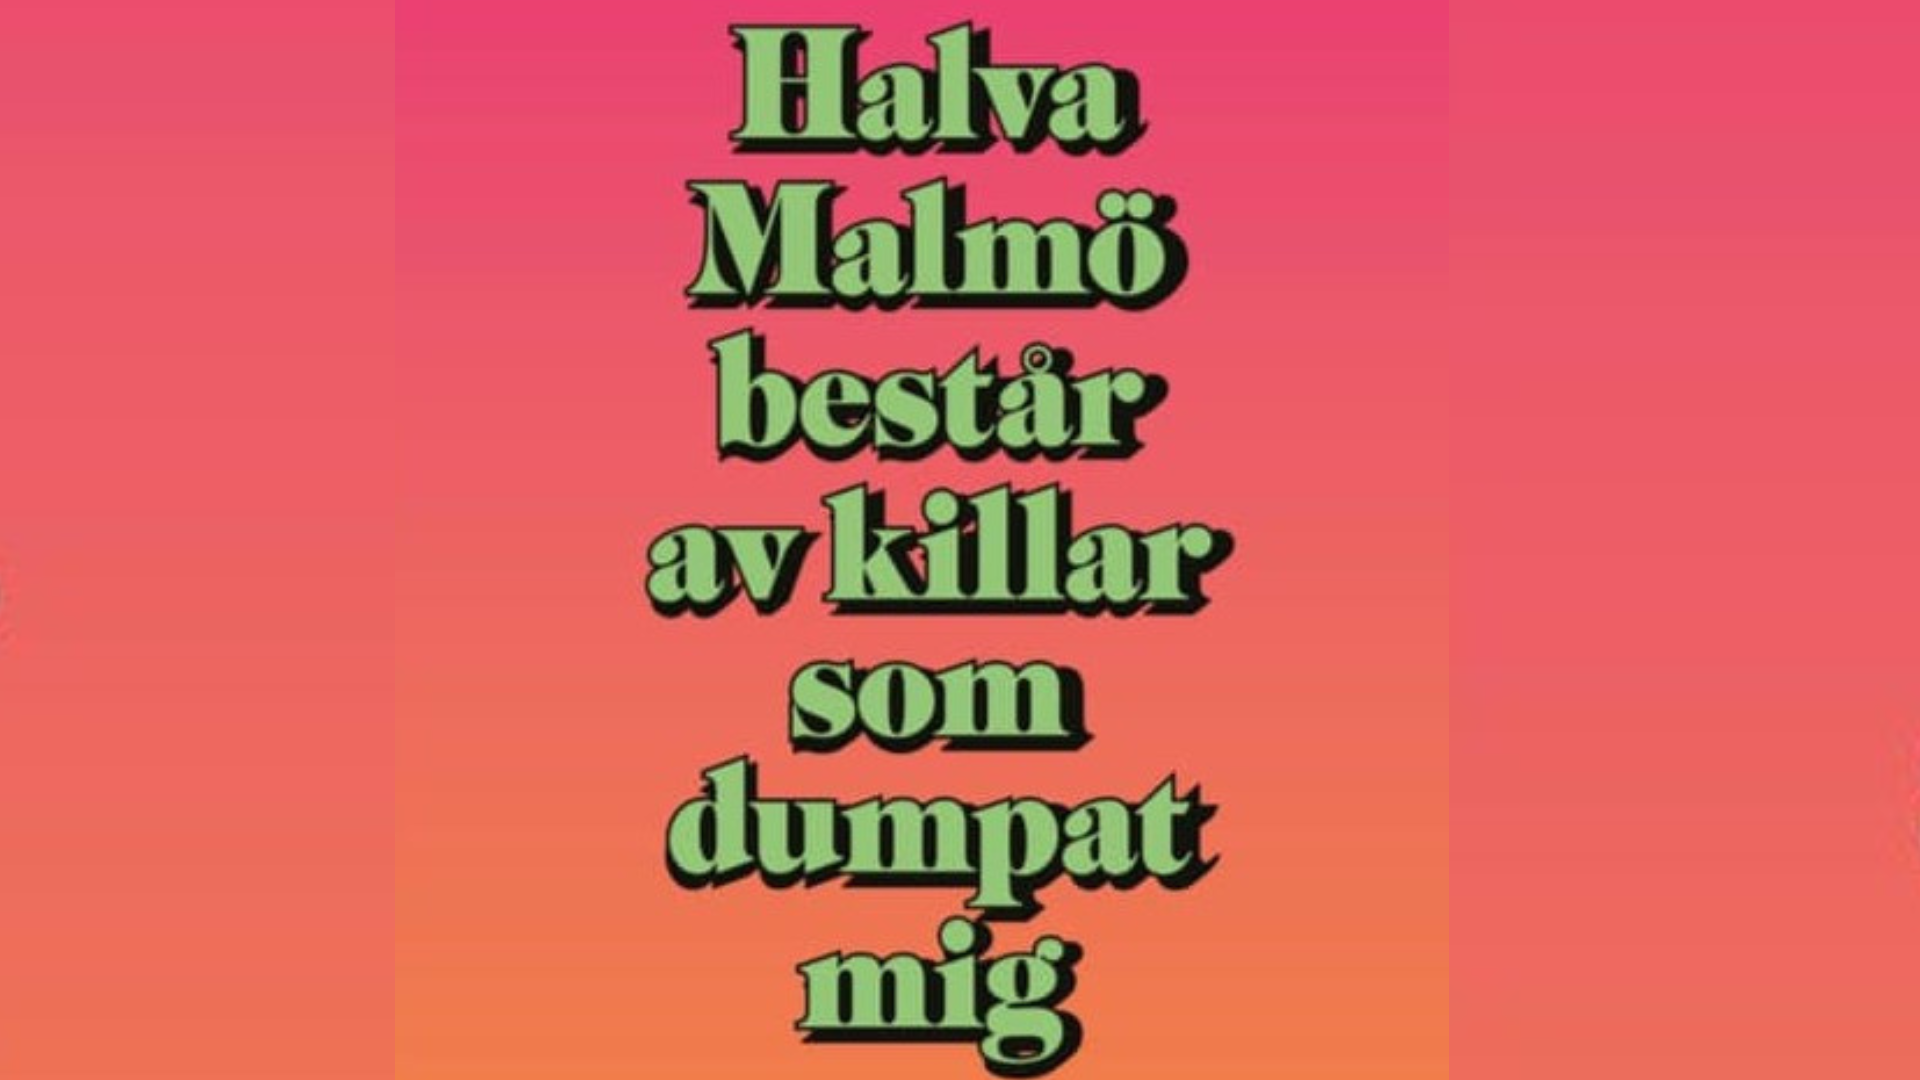 Halva Malmö består av killar som dumpat mig” blir tv-serie